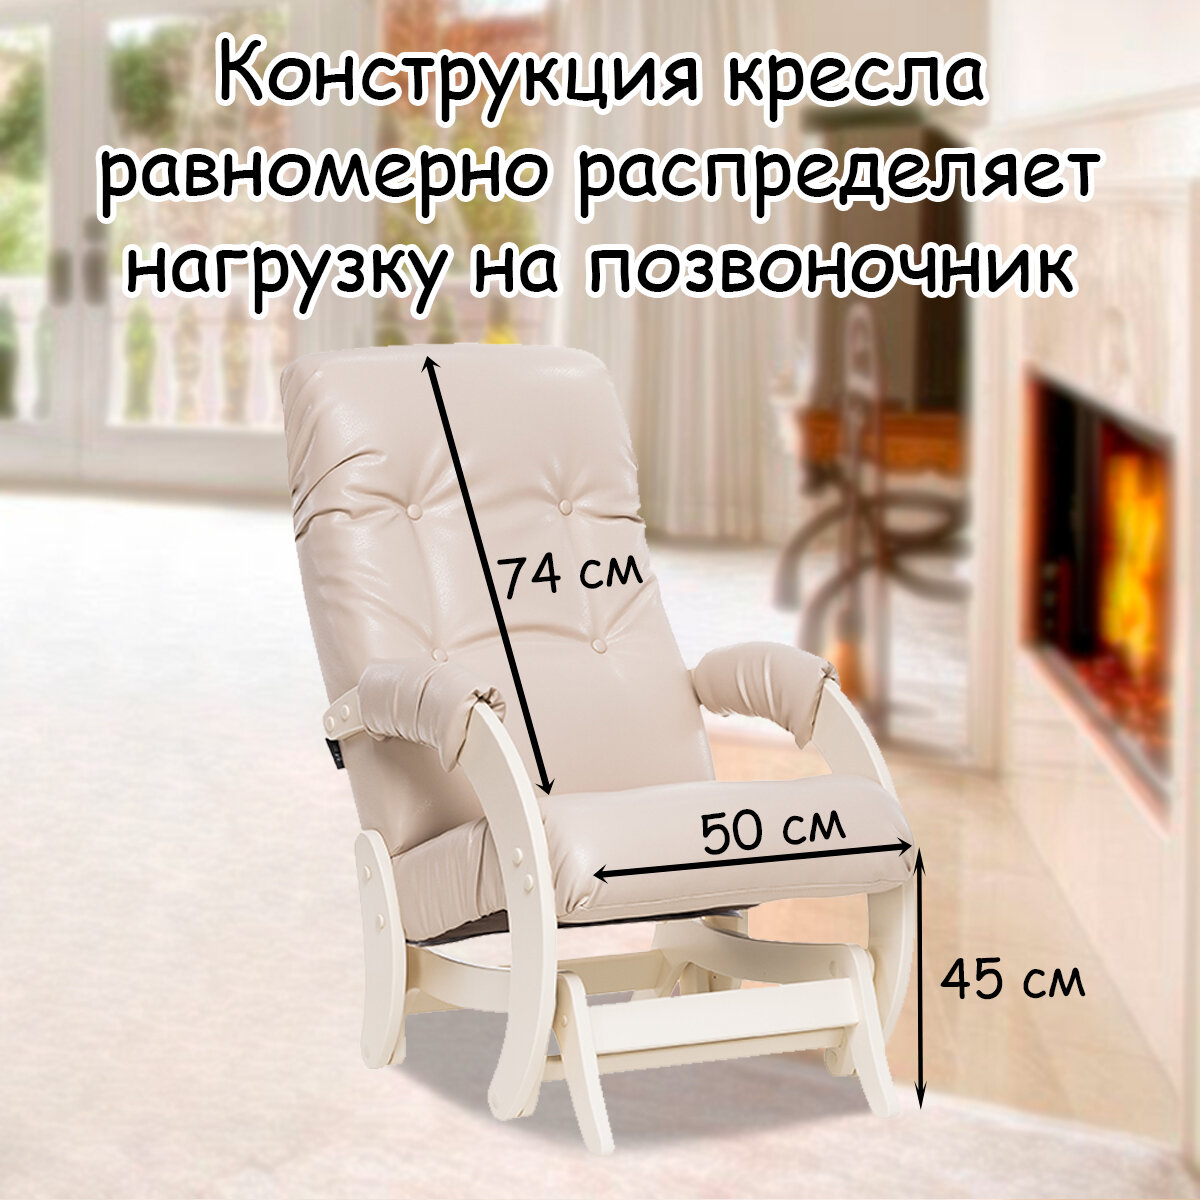 Кресло-качалка (глайдер) с маятниковым механизмом для взрослых 55х88х100 см, модель 68, экокожа, цвет: Polaris beige (бежевый), каркас: Dub shampan (бежевый) - фотография № 2